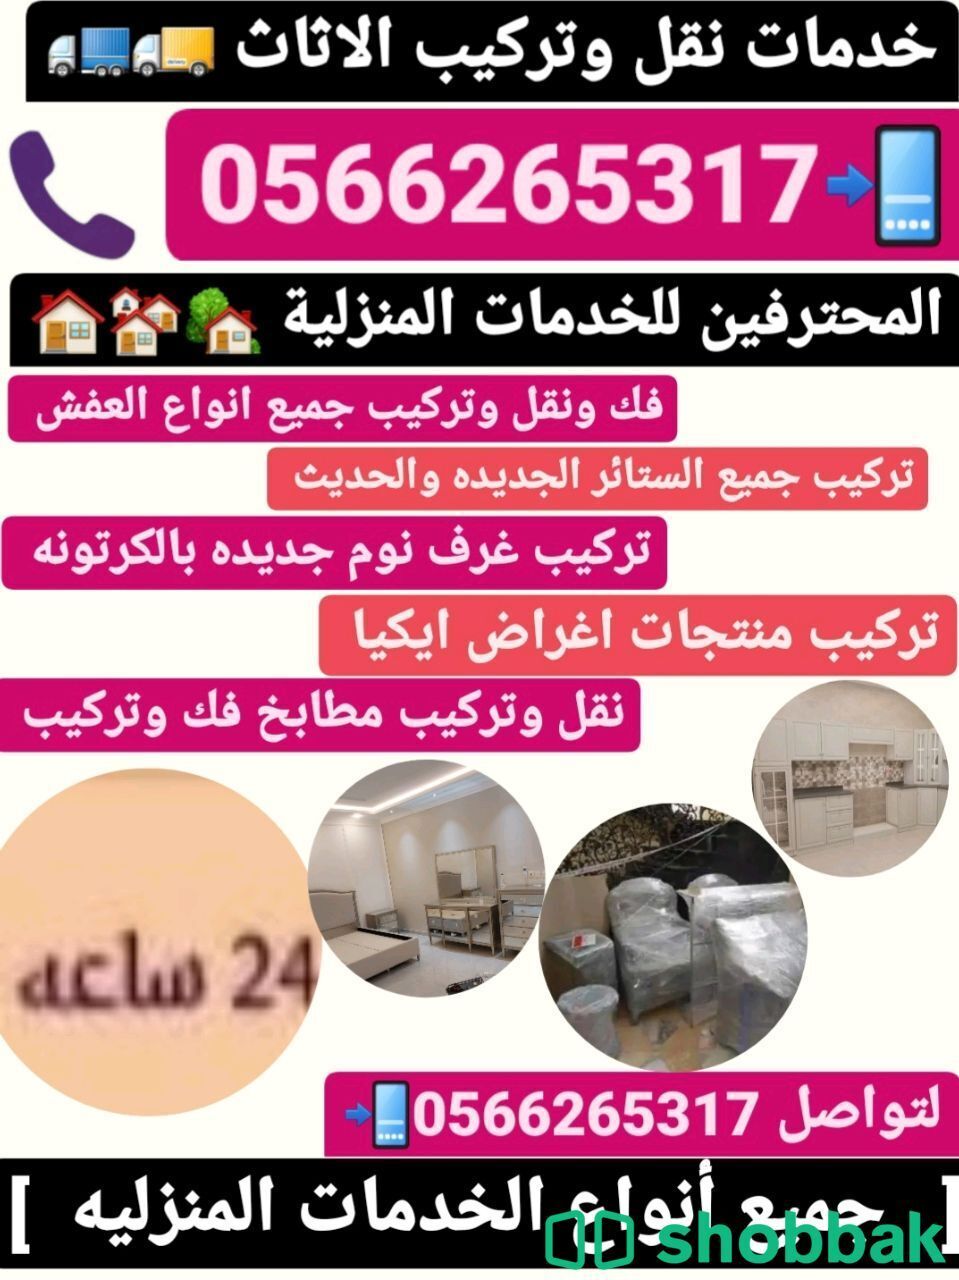 تركيب ستائر بالدمام [0566265317]  اتصل بنا فني تركيب ستائر جديده بالقطيف  Shobbak Saudi Arabia